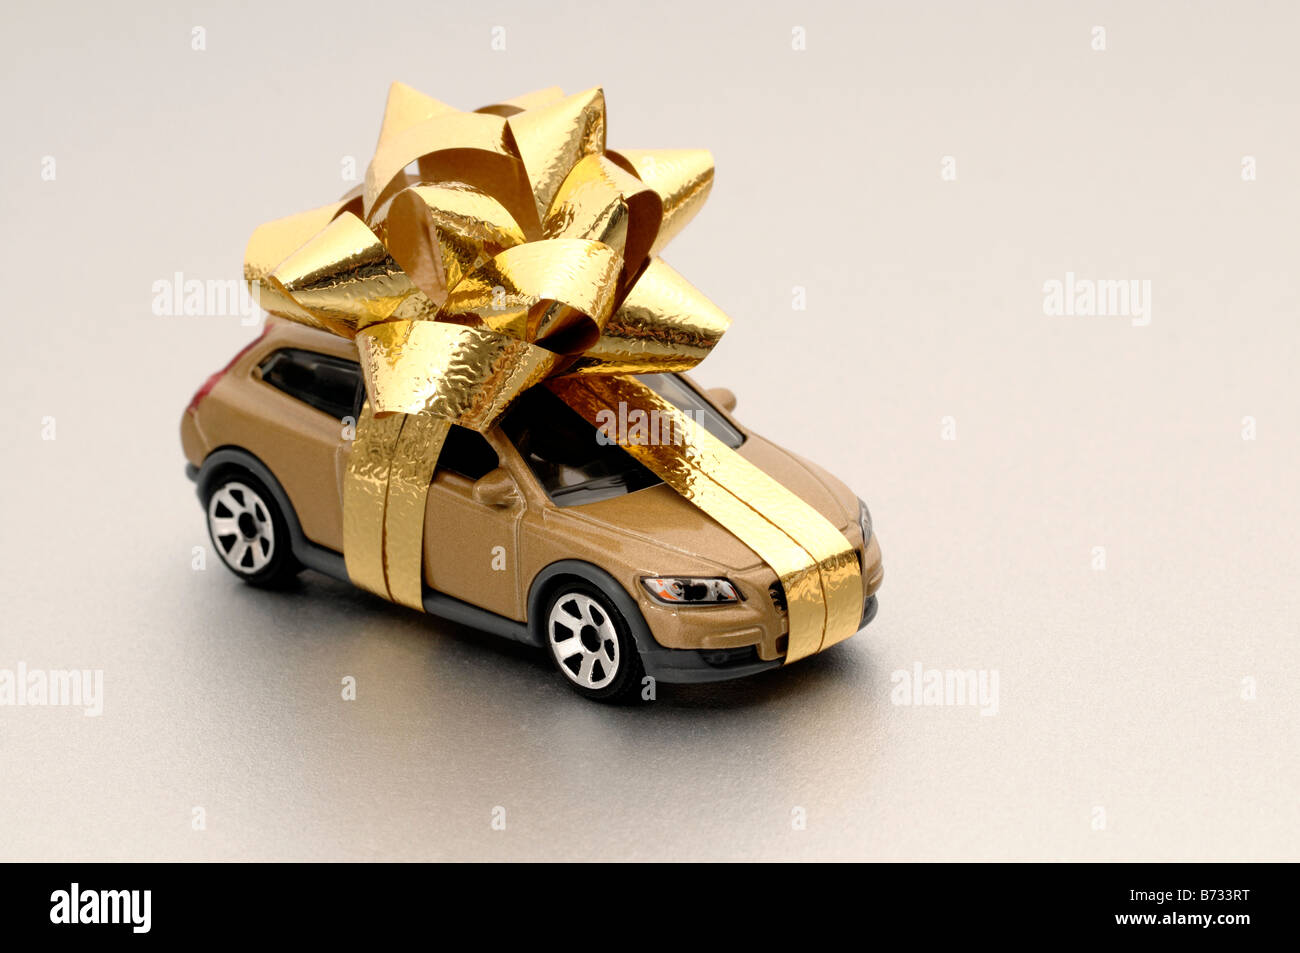 Set de 3 caja de cartón para regalos decoradas con Taxis de New